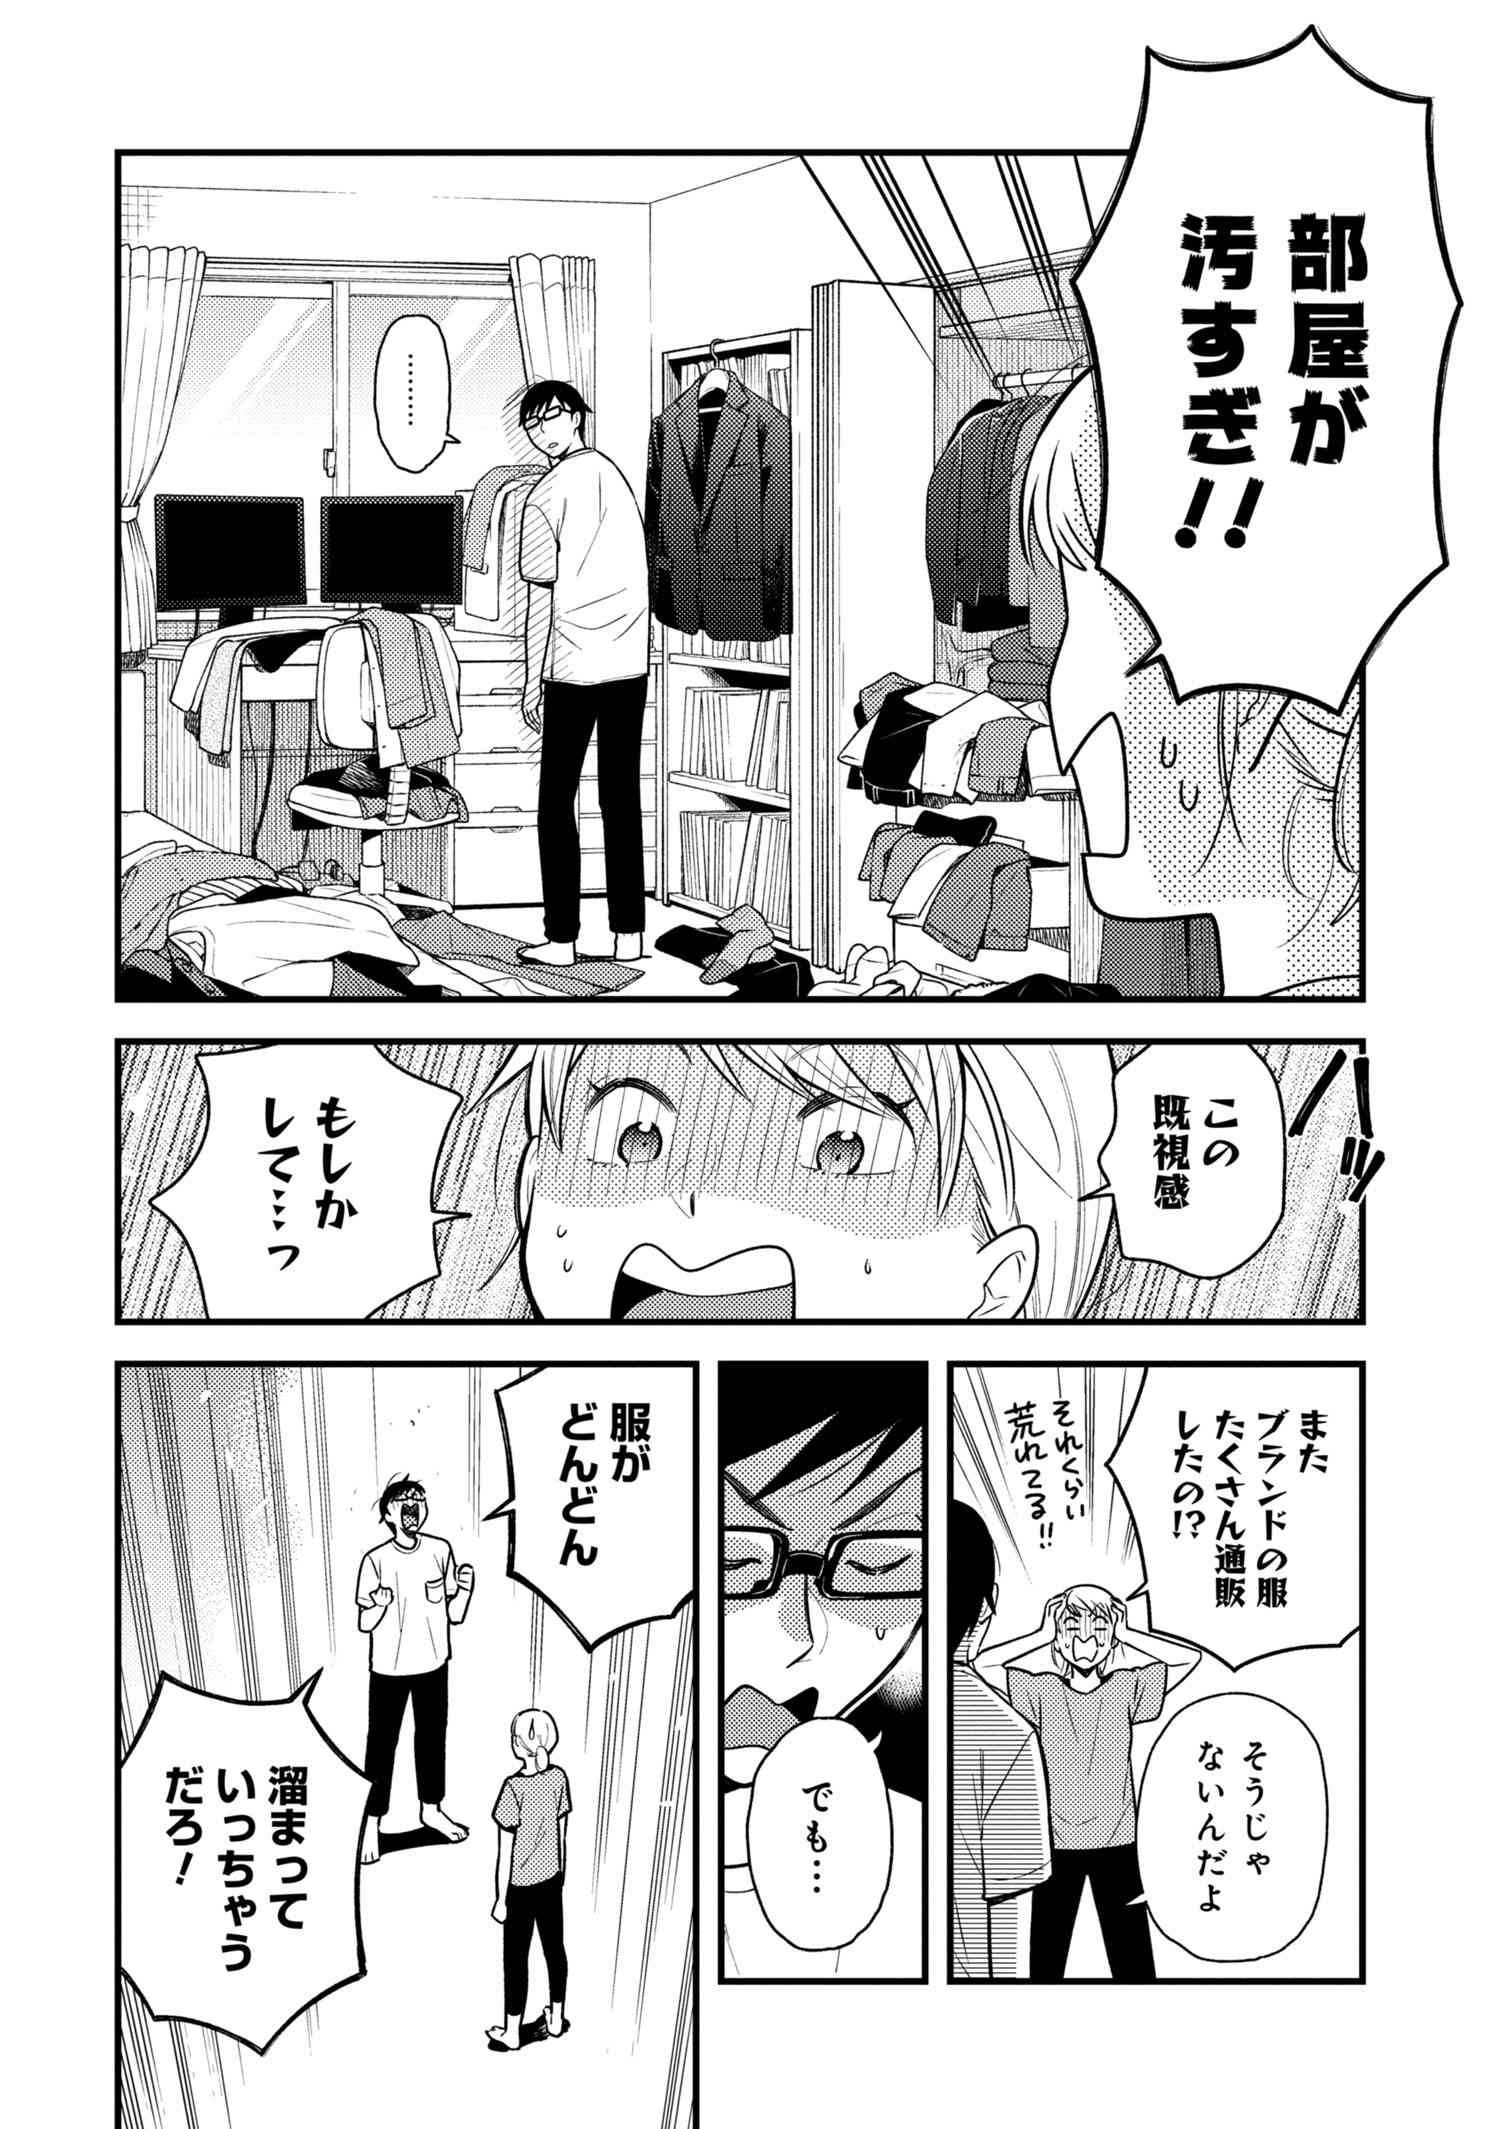 Fuku o Kiru Nara Konna Fuu ni - 服を着るならこんなふうに - Chapter 56 - Page 2